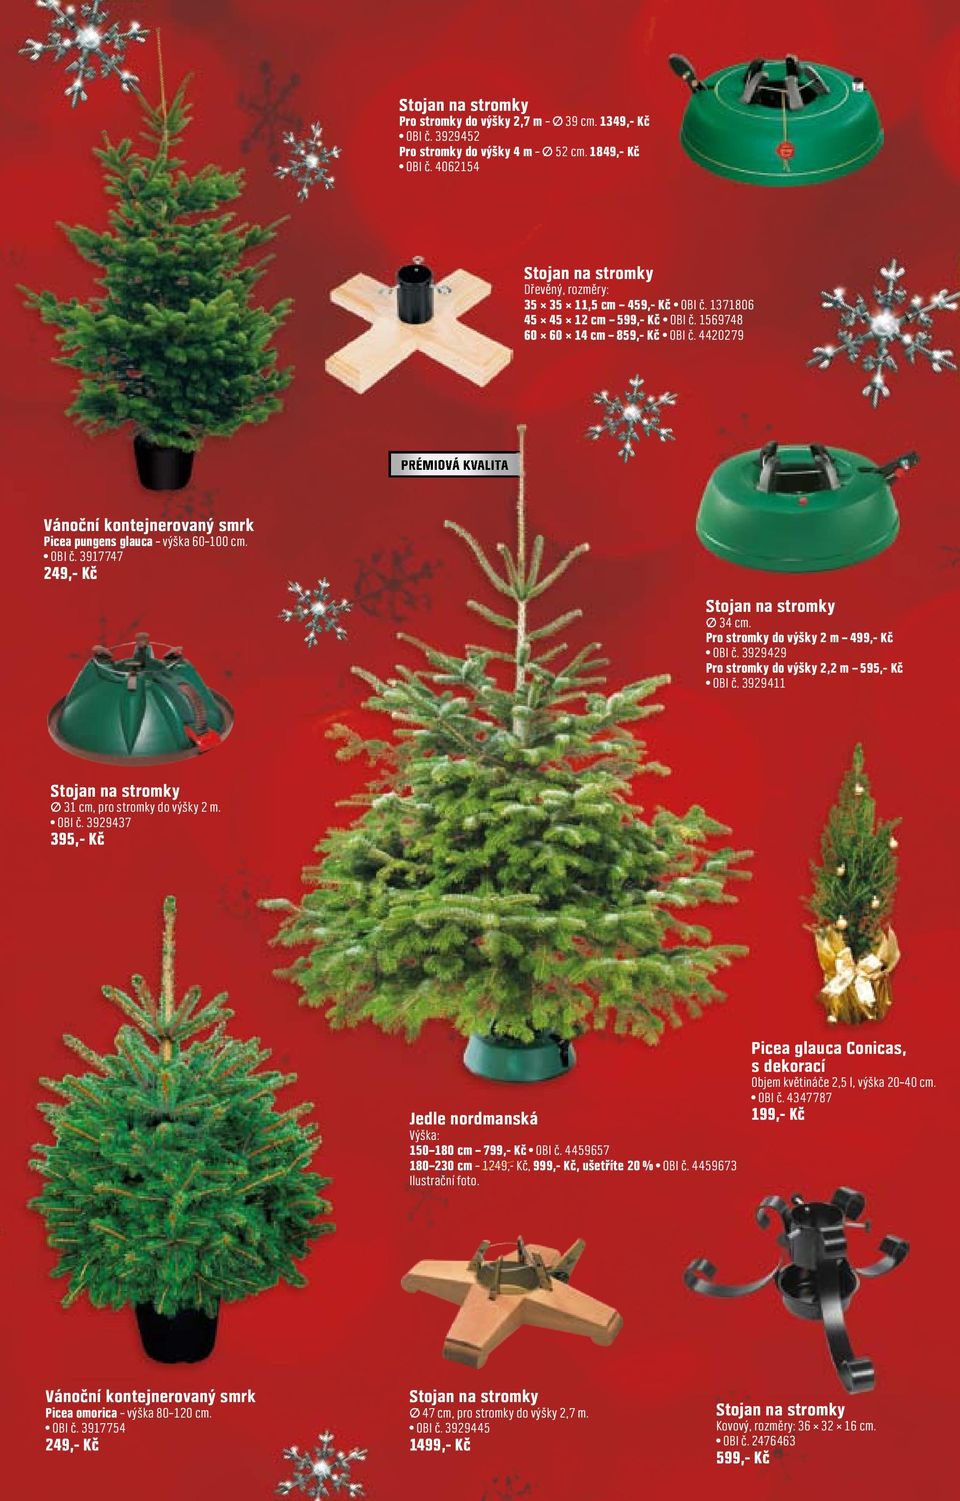 4420279 PRÉMIOVÁ KVALITA Vánoční kontejnerovaný smrk Picea pungens glauca výška 60 100 cm. OBI č. 3917747 249,- Kč Stojan na stromky 34 cm. Pro stromky do výšky 2 m 499,- Kč OBI č.